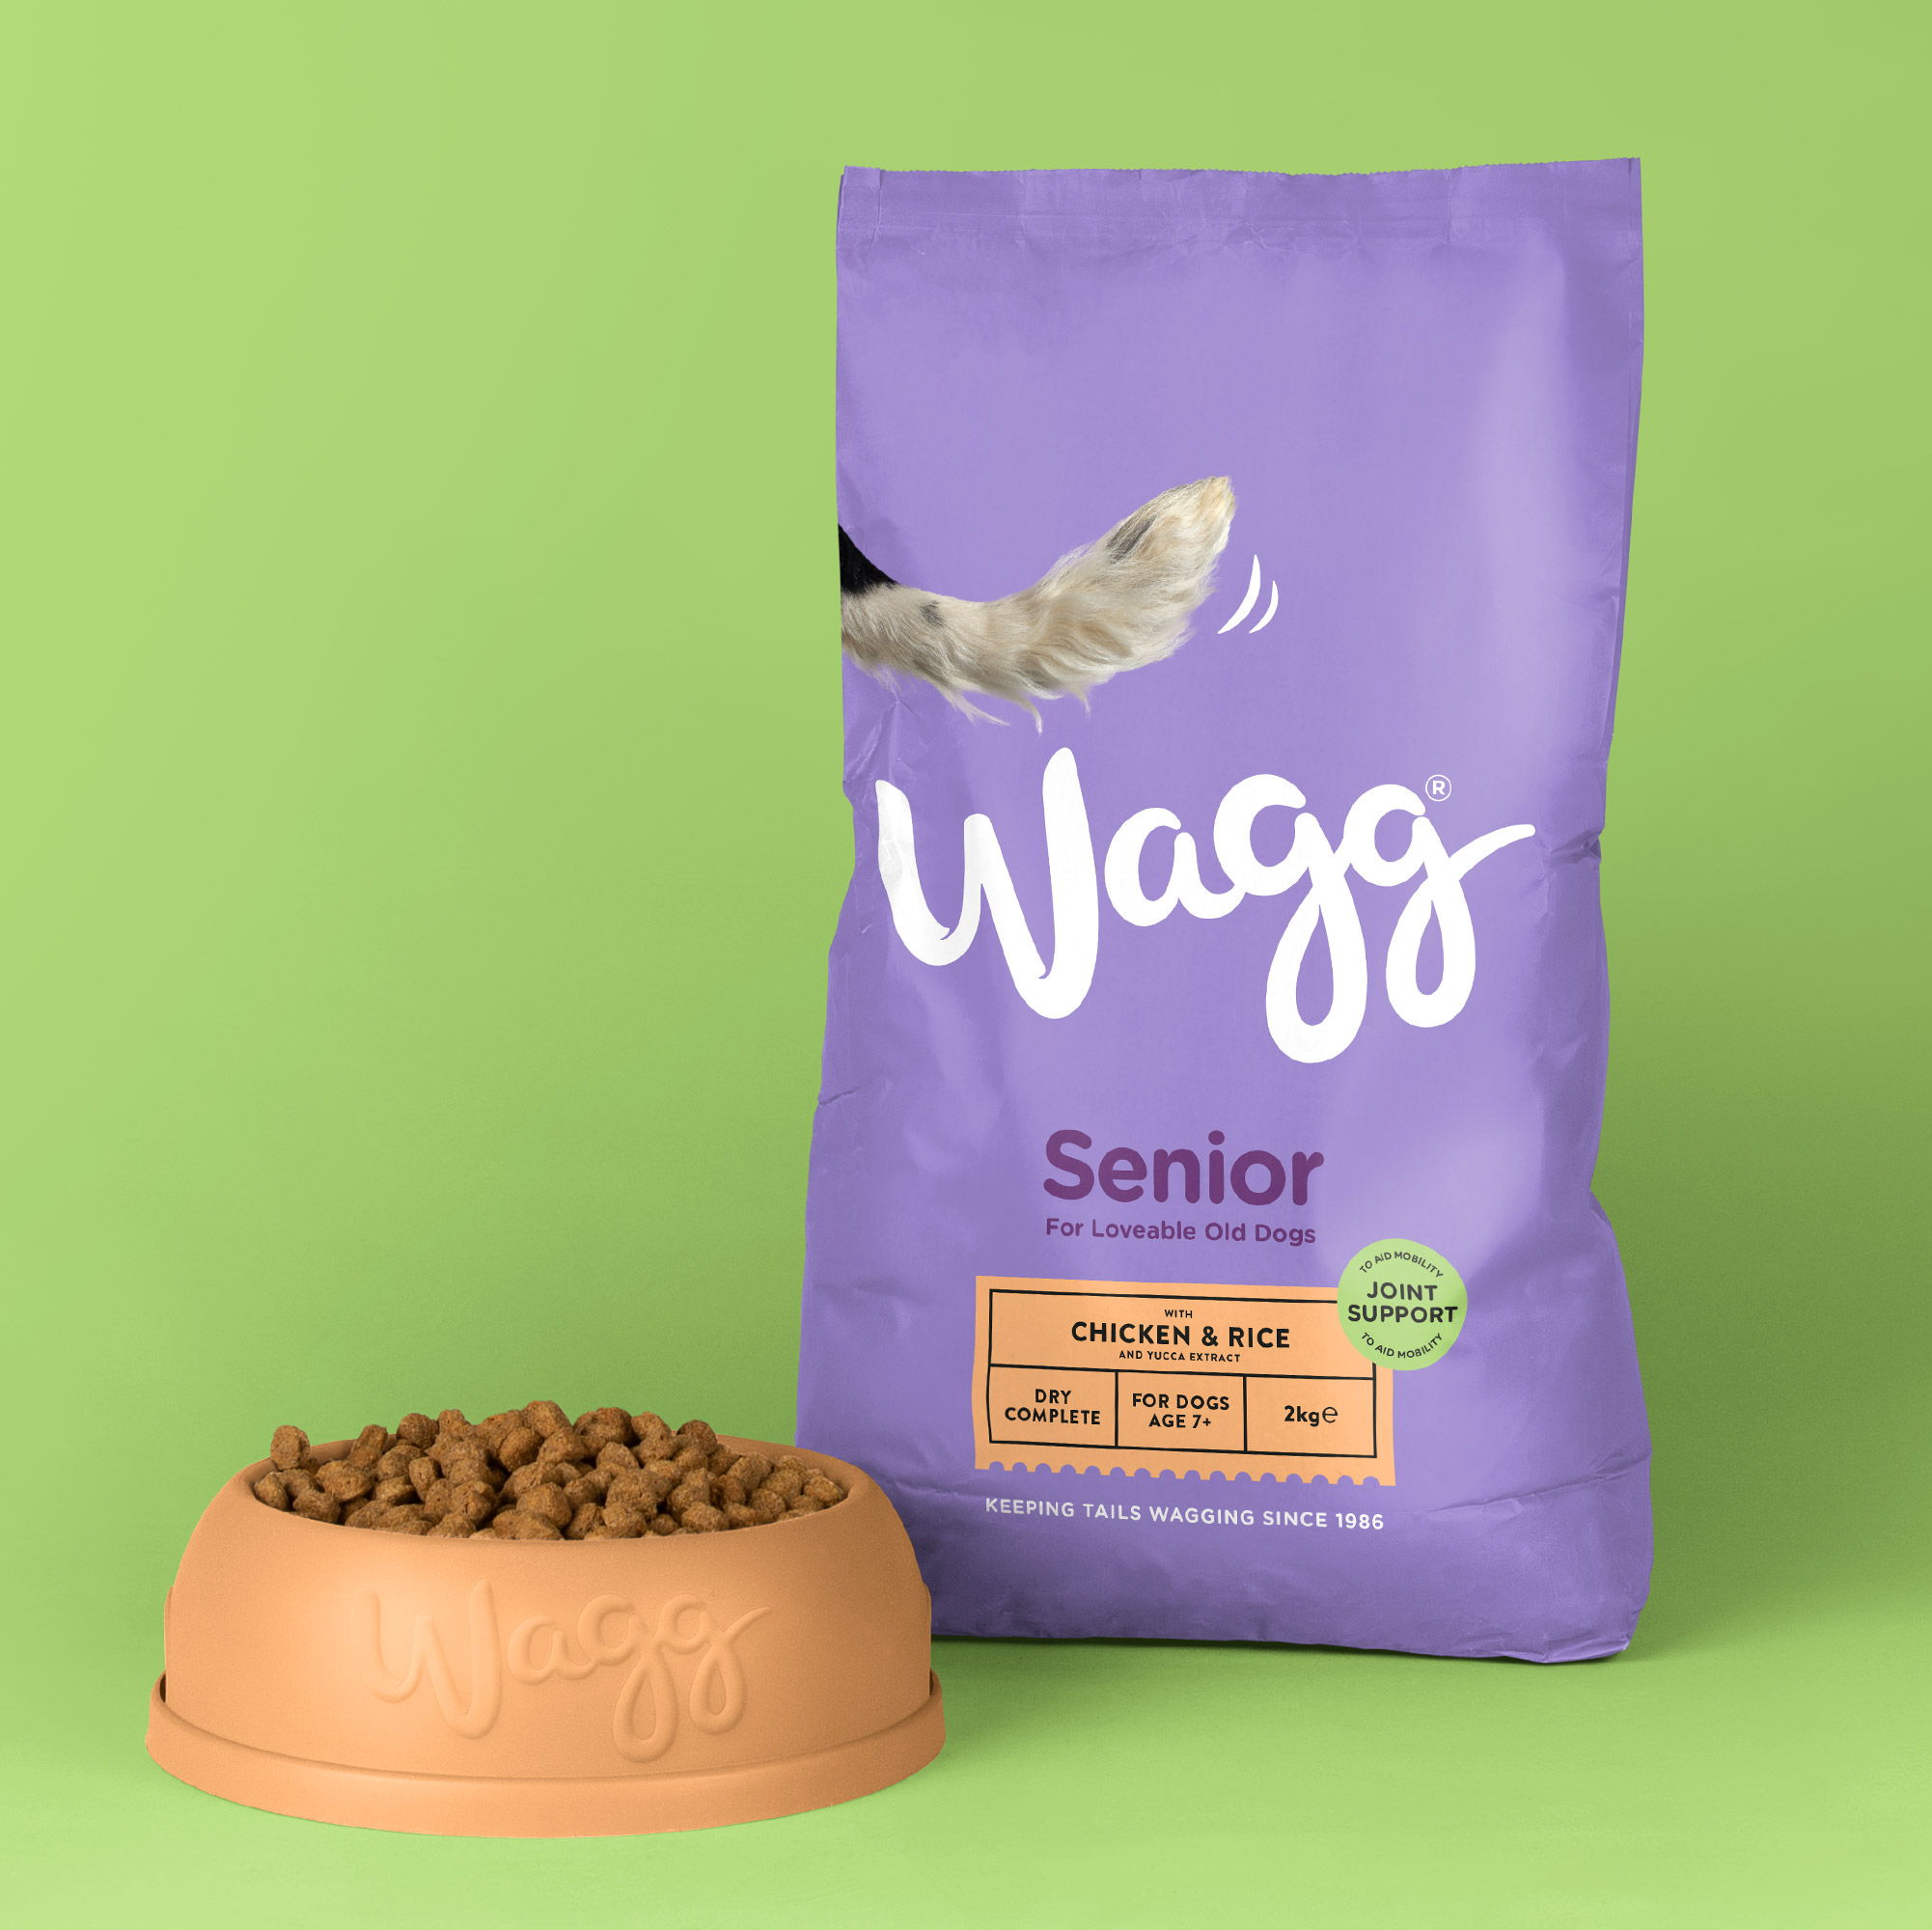 Wagg-为宠物食品带来俏皮清晰度的设计